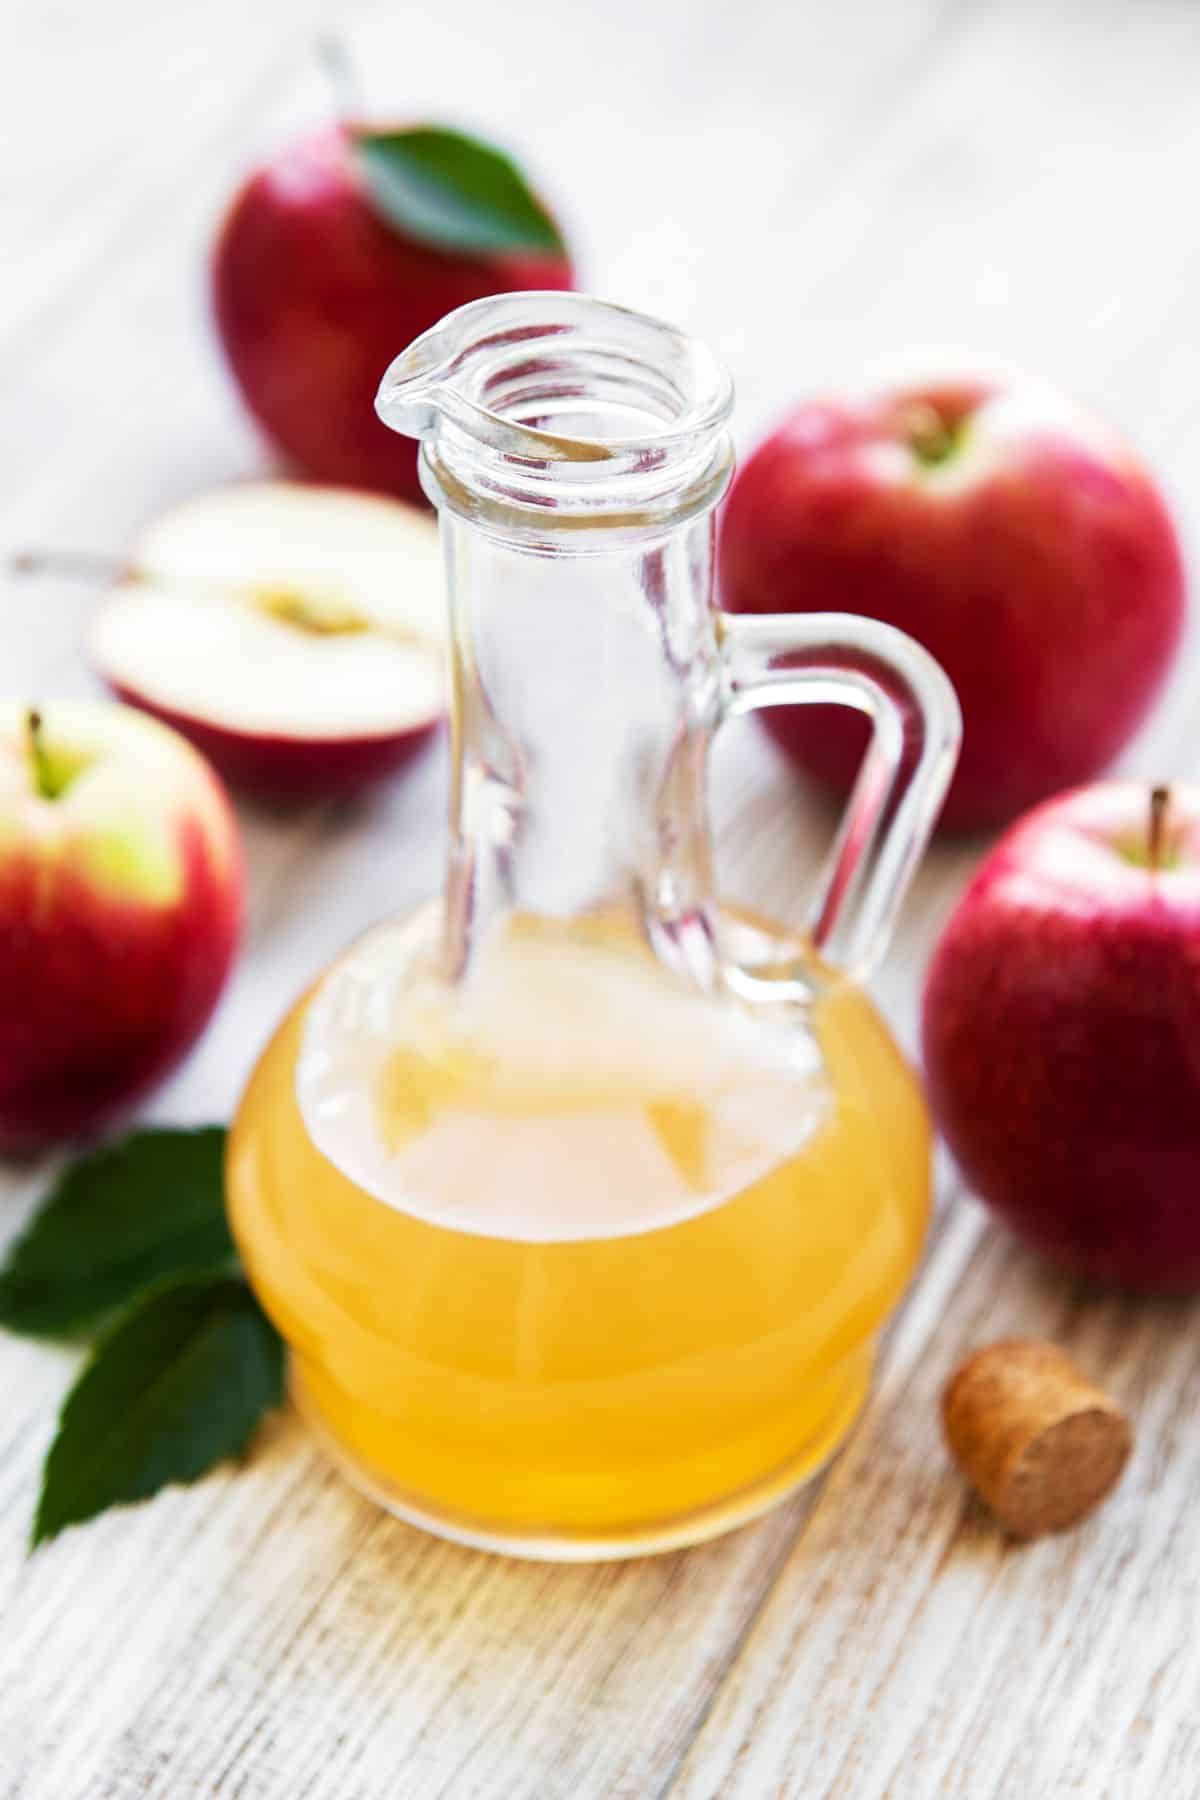 Bottle of apple cider vinegar with apples.